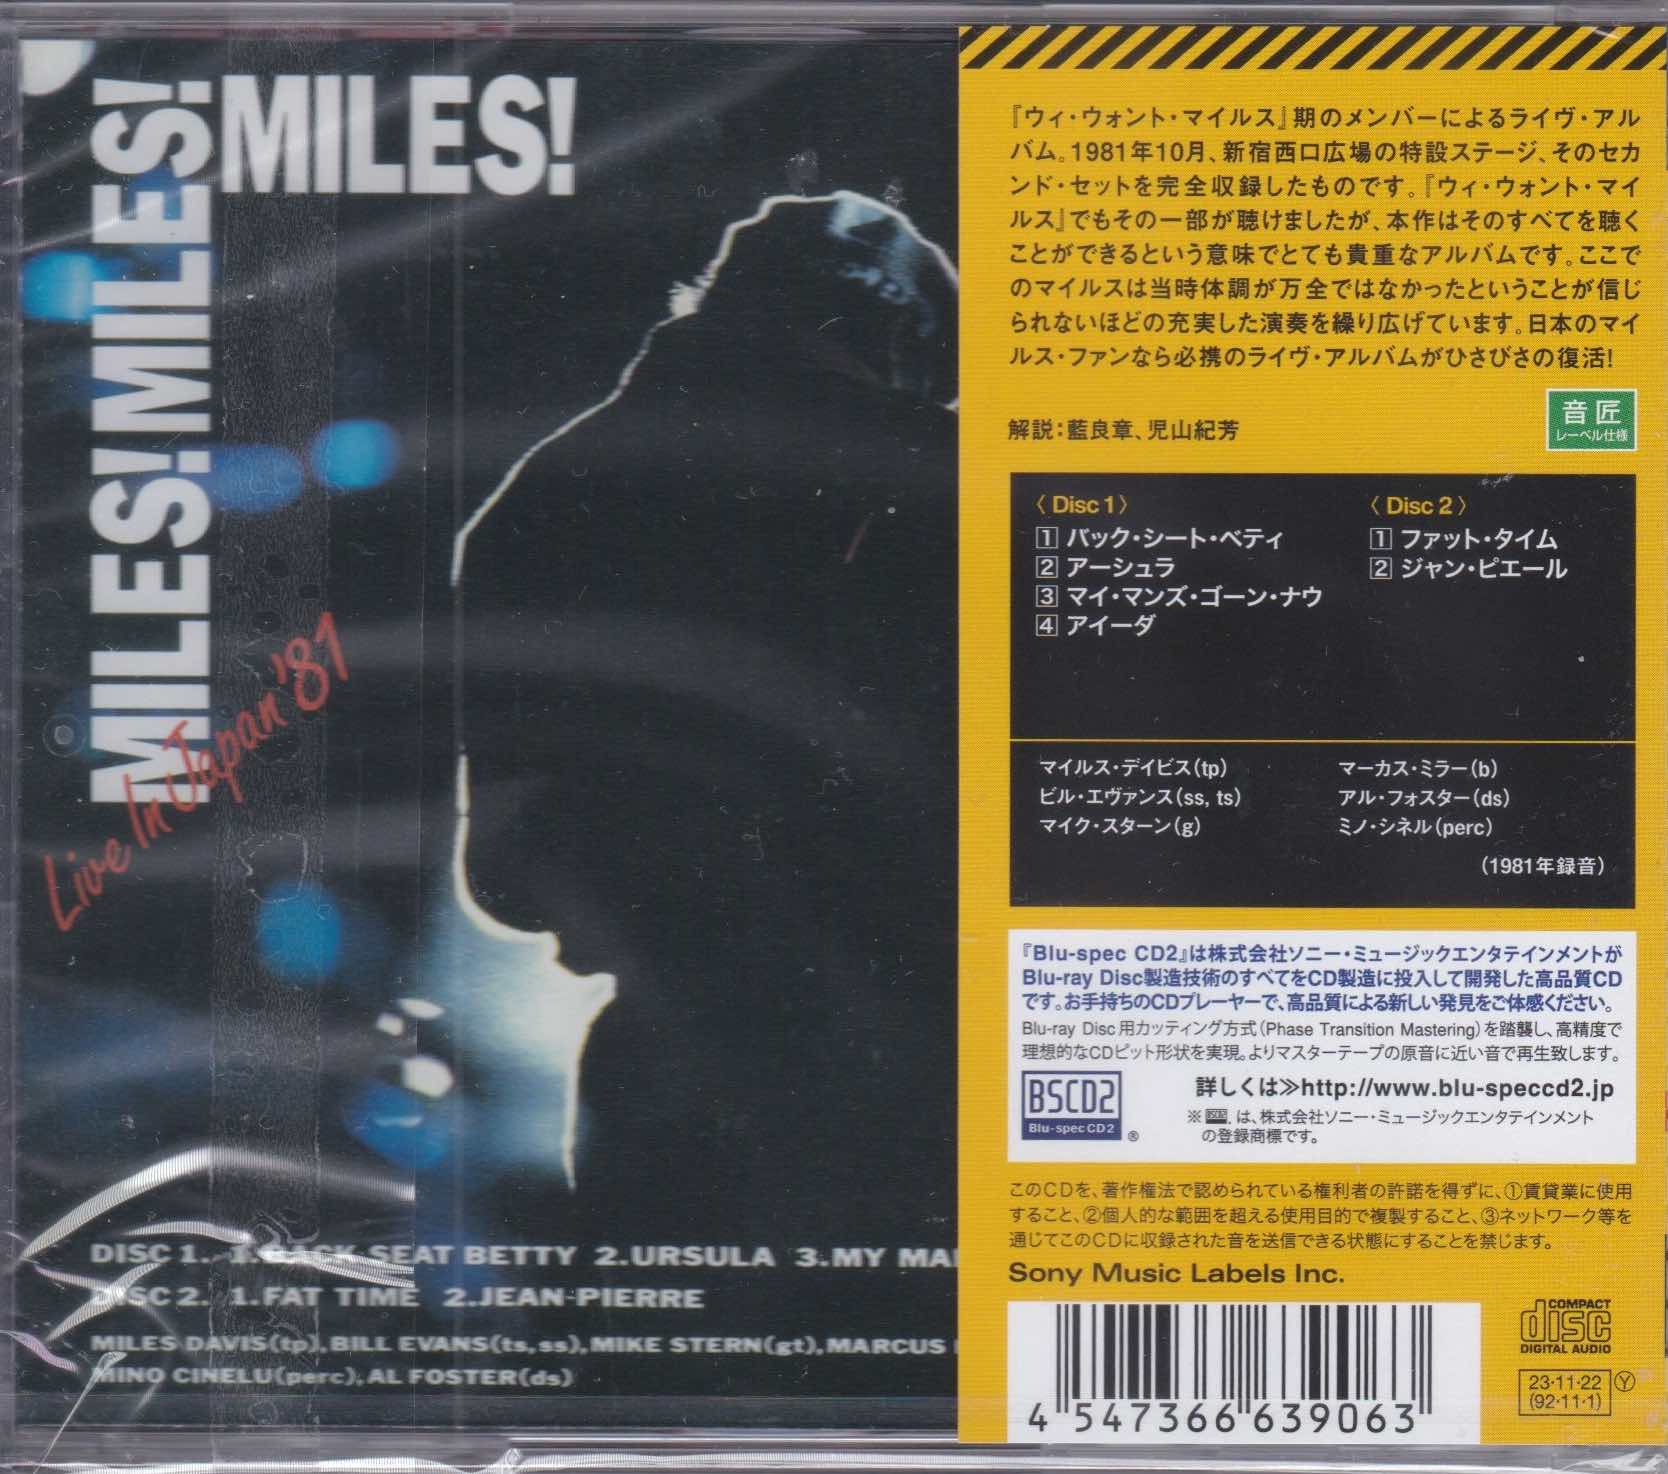 Miles Davis – Miles! Miles! Miles! Live In Japan '81